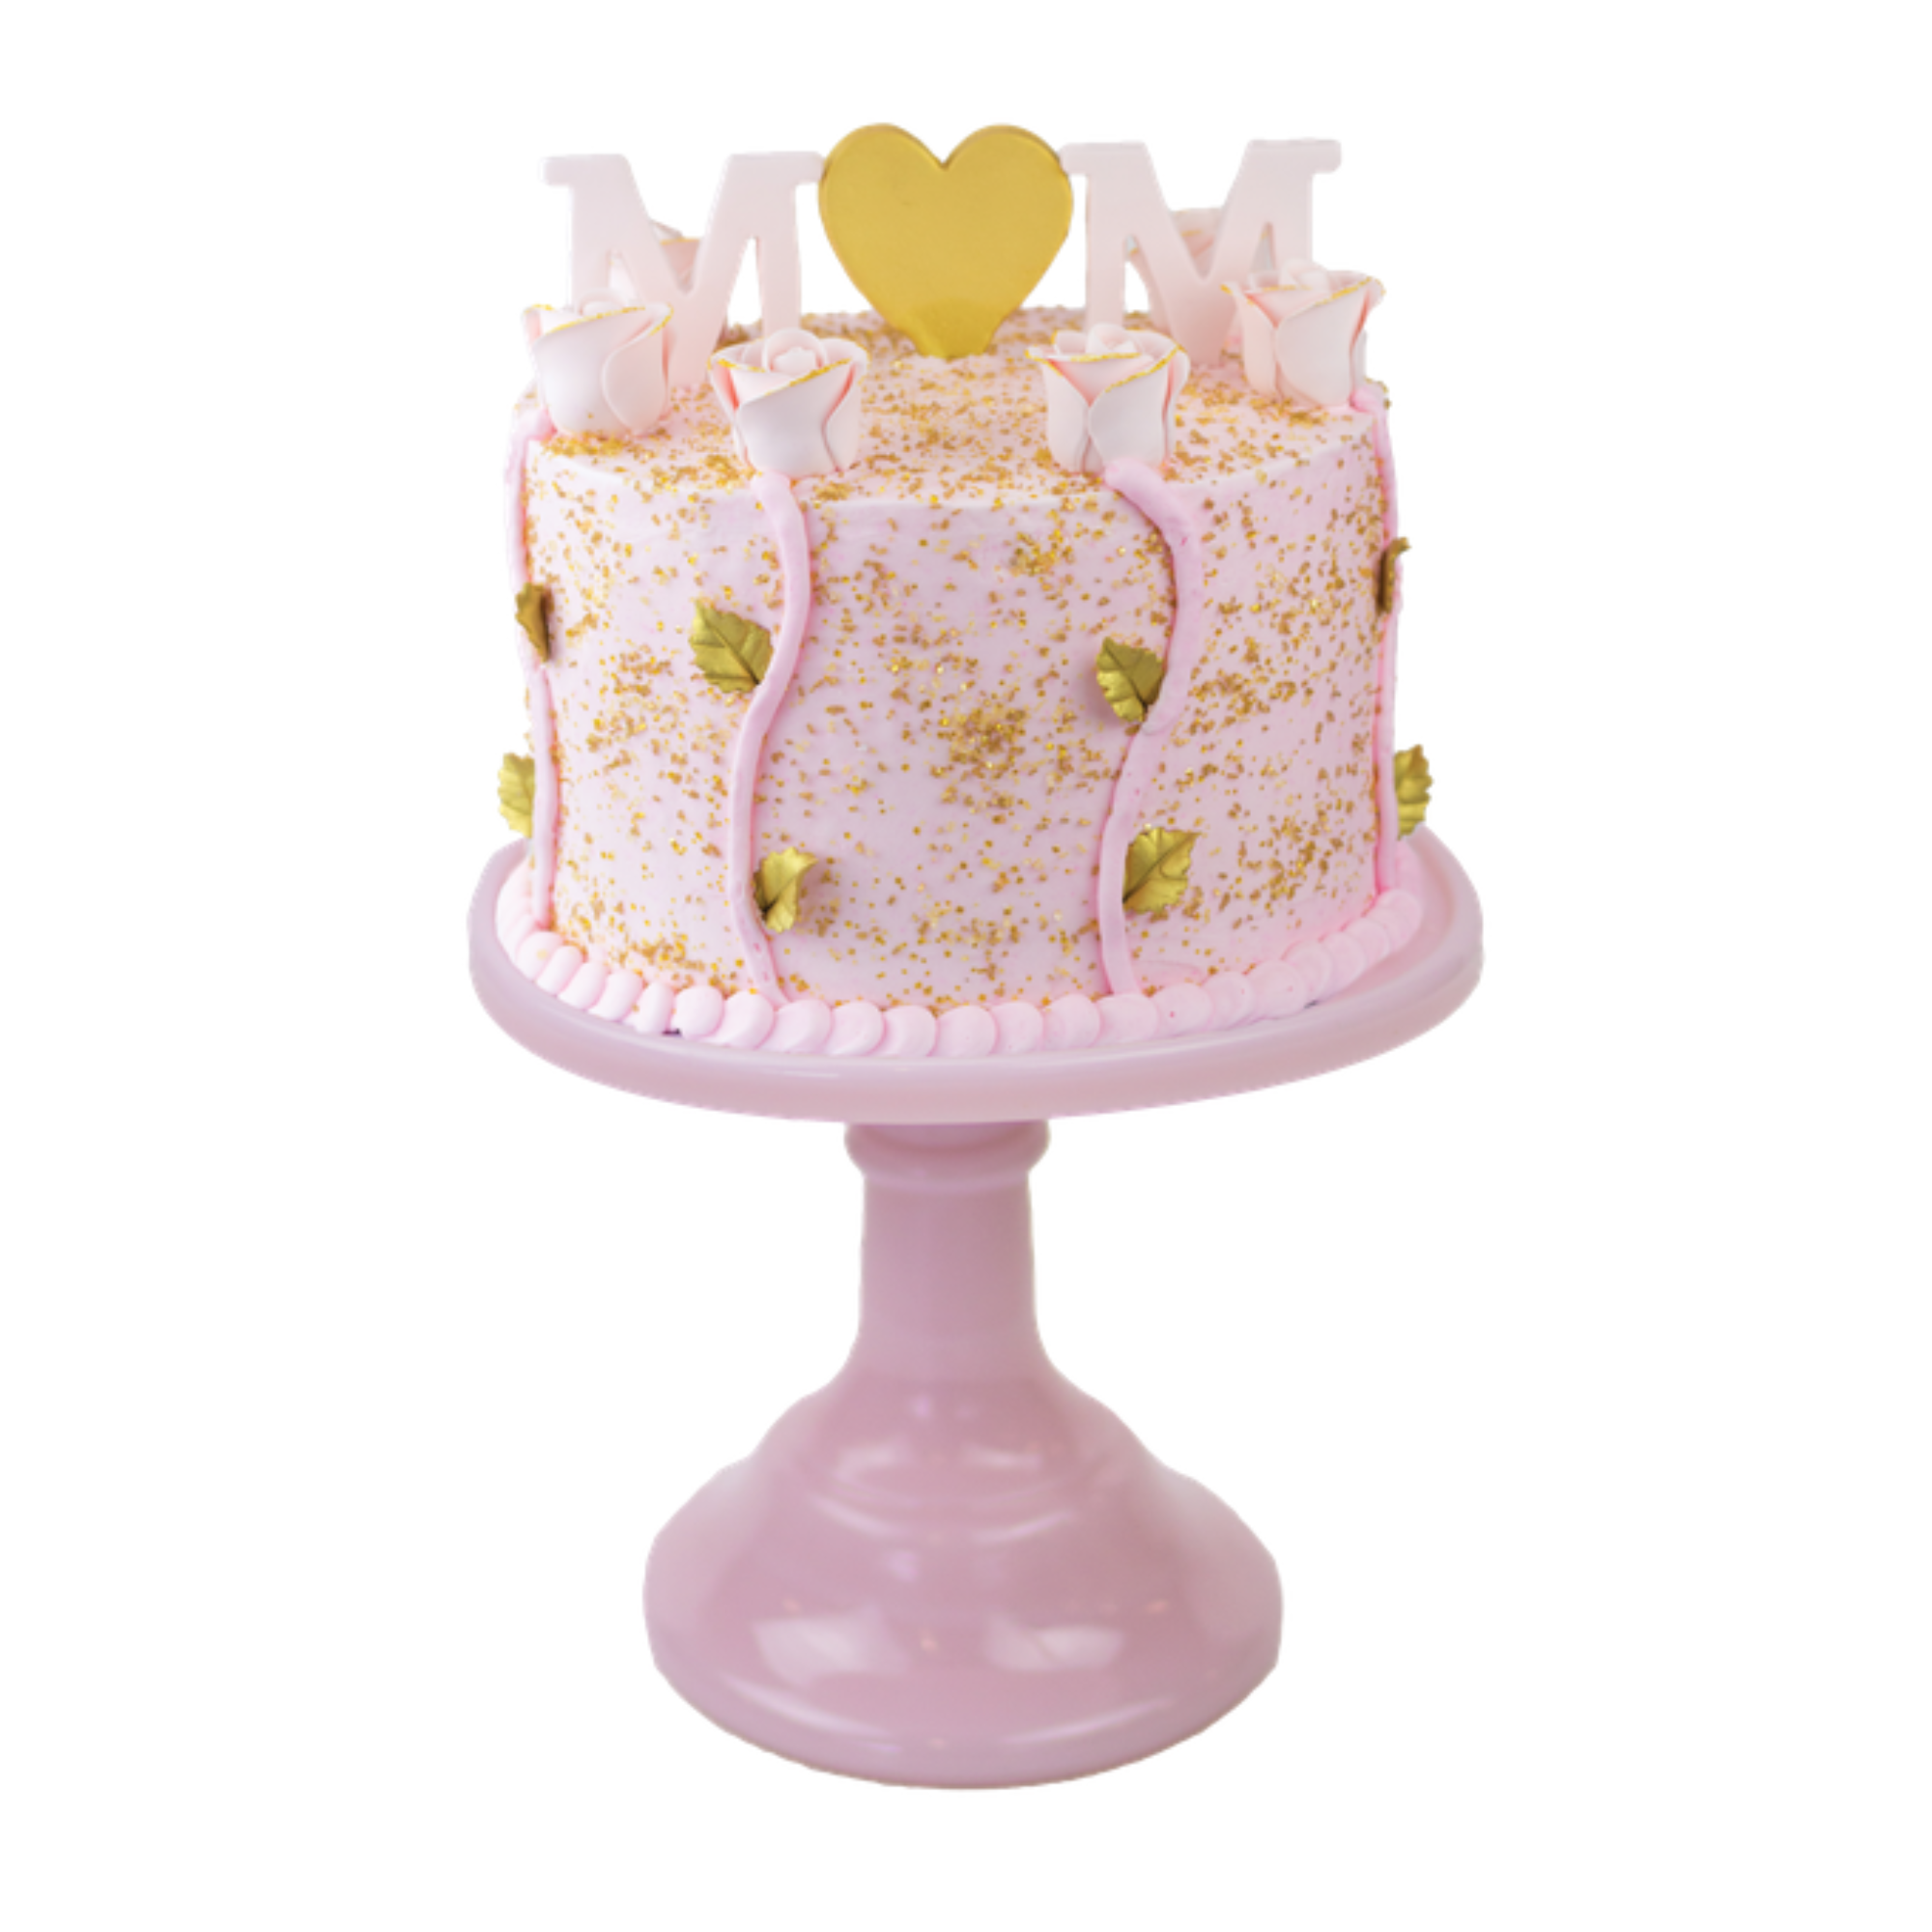 Mother's Day Designer Cake Decor - Bulk (Case of 6)